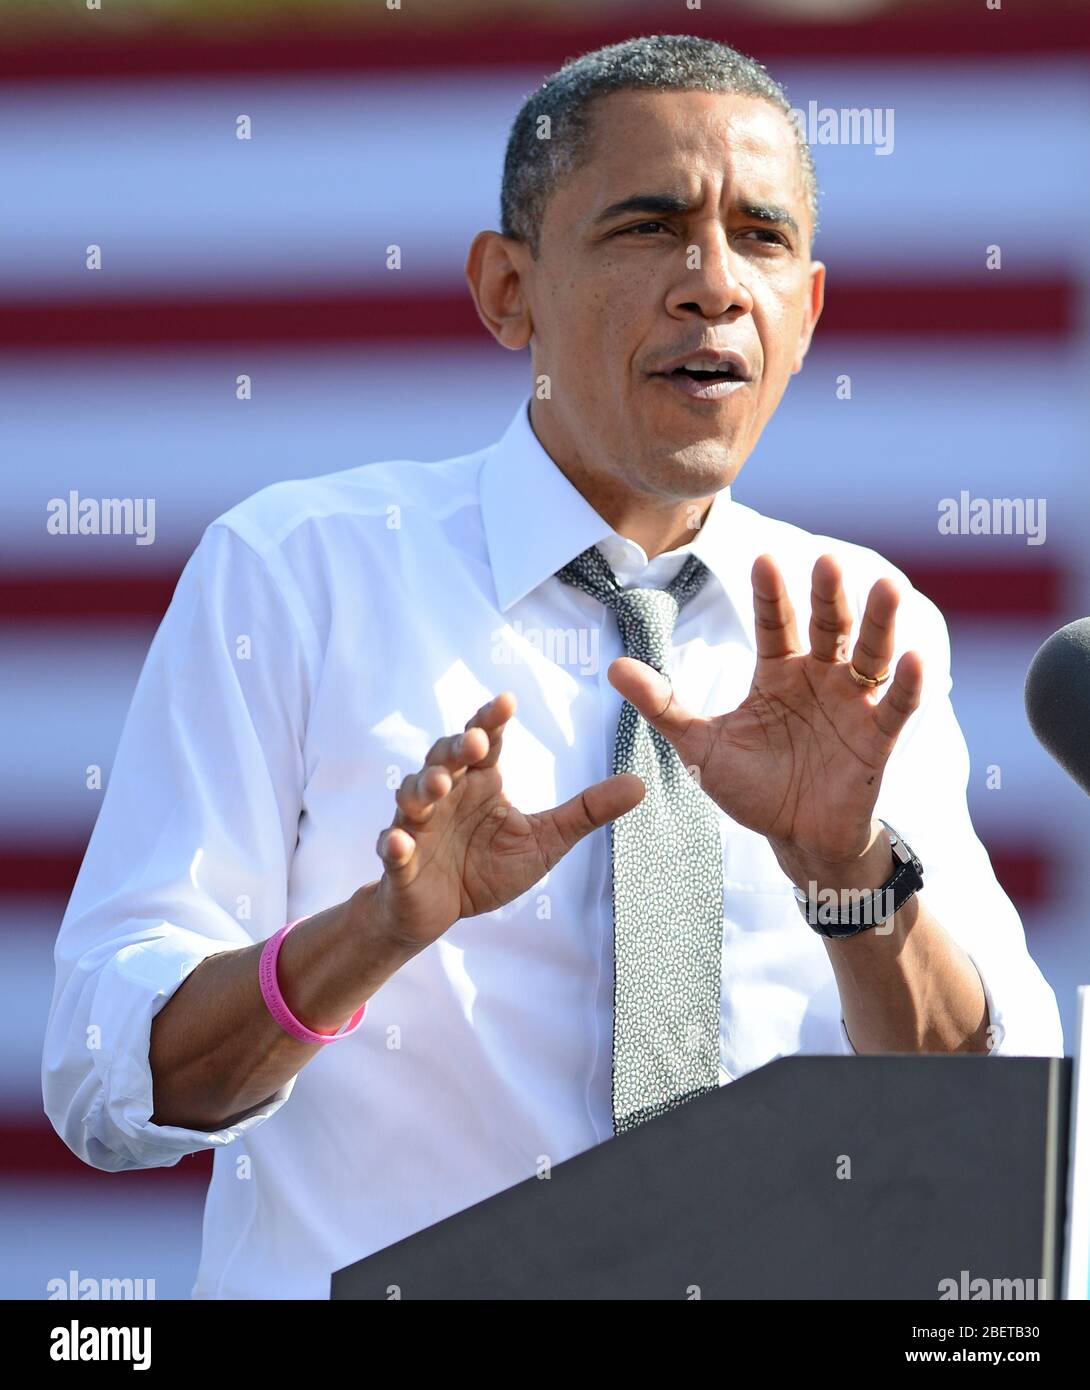 DELRAY BEACH FL- 23 DE OCTUBRE: El presidente DE EE.UU., Barack Obama, habla durante un evento de campaña de Grassroots en el Delray Beach Tennis Center el 23 de octubre de 2012 en Foto de stock